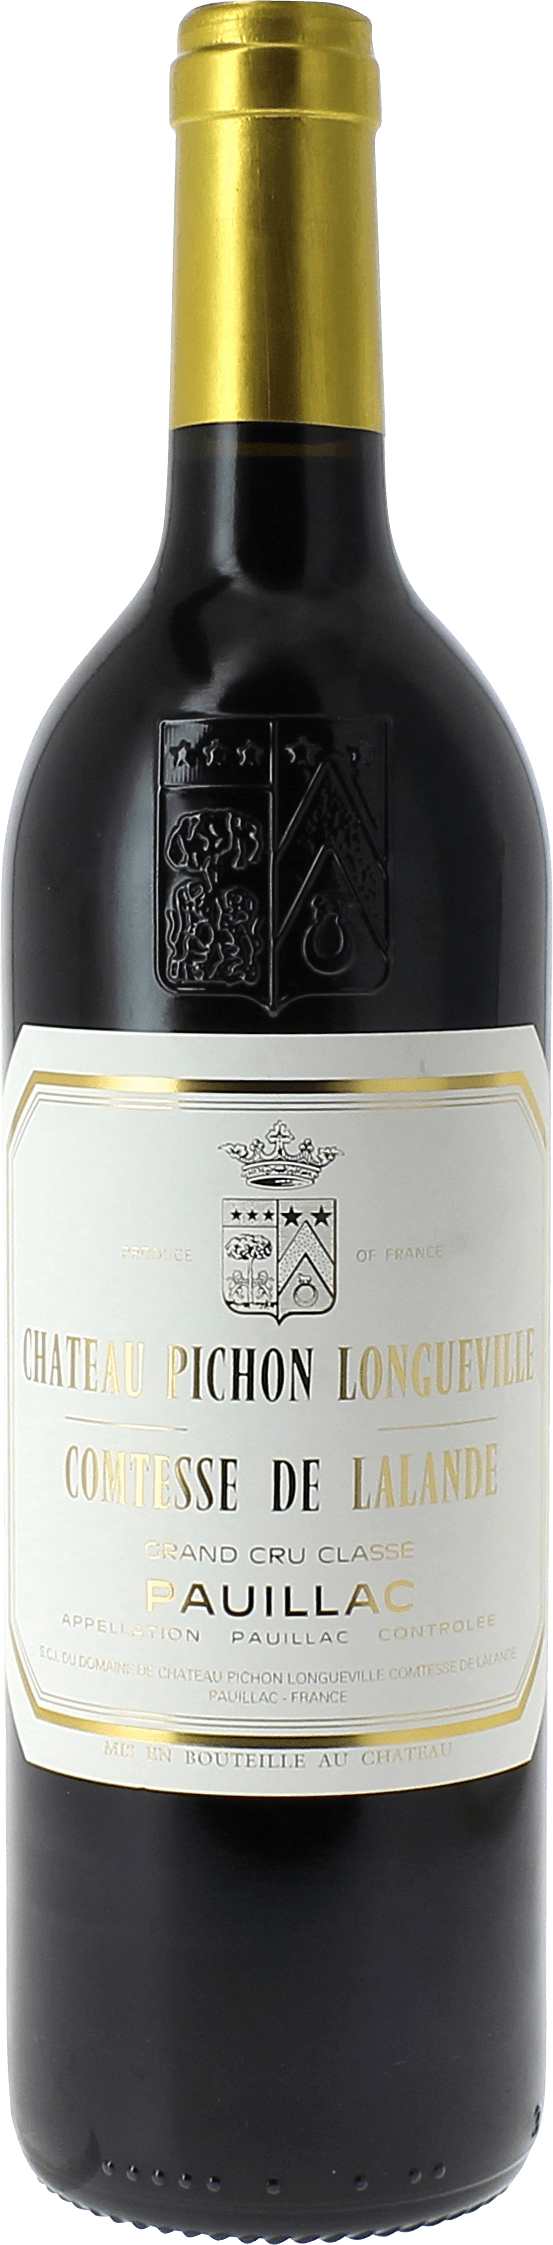 Pichon comtesse de lalande 2021 2me Grand cru class Pauillac, Bordeaux rouge